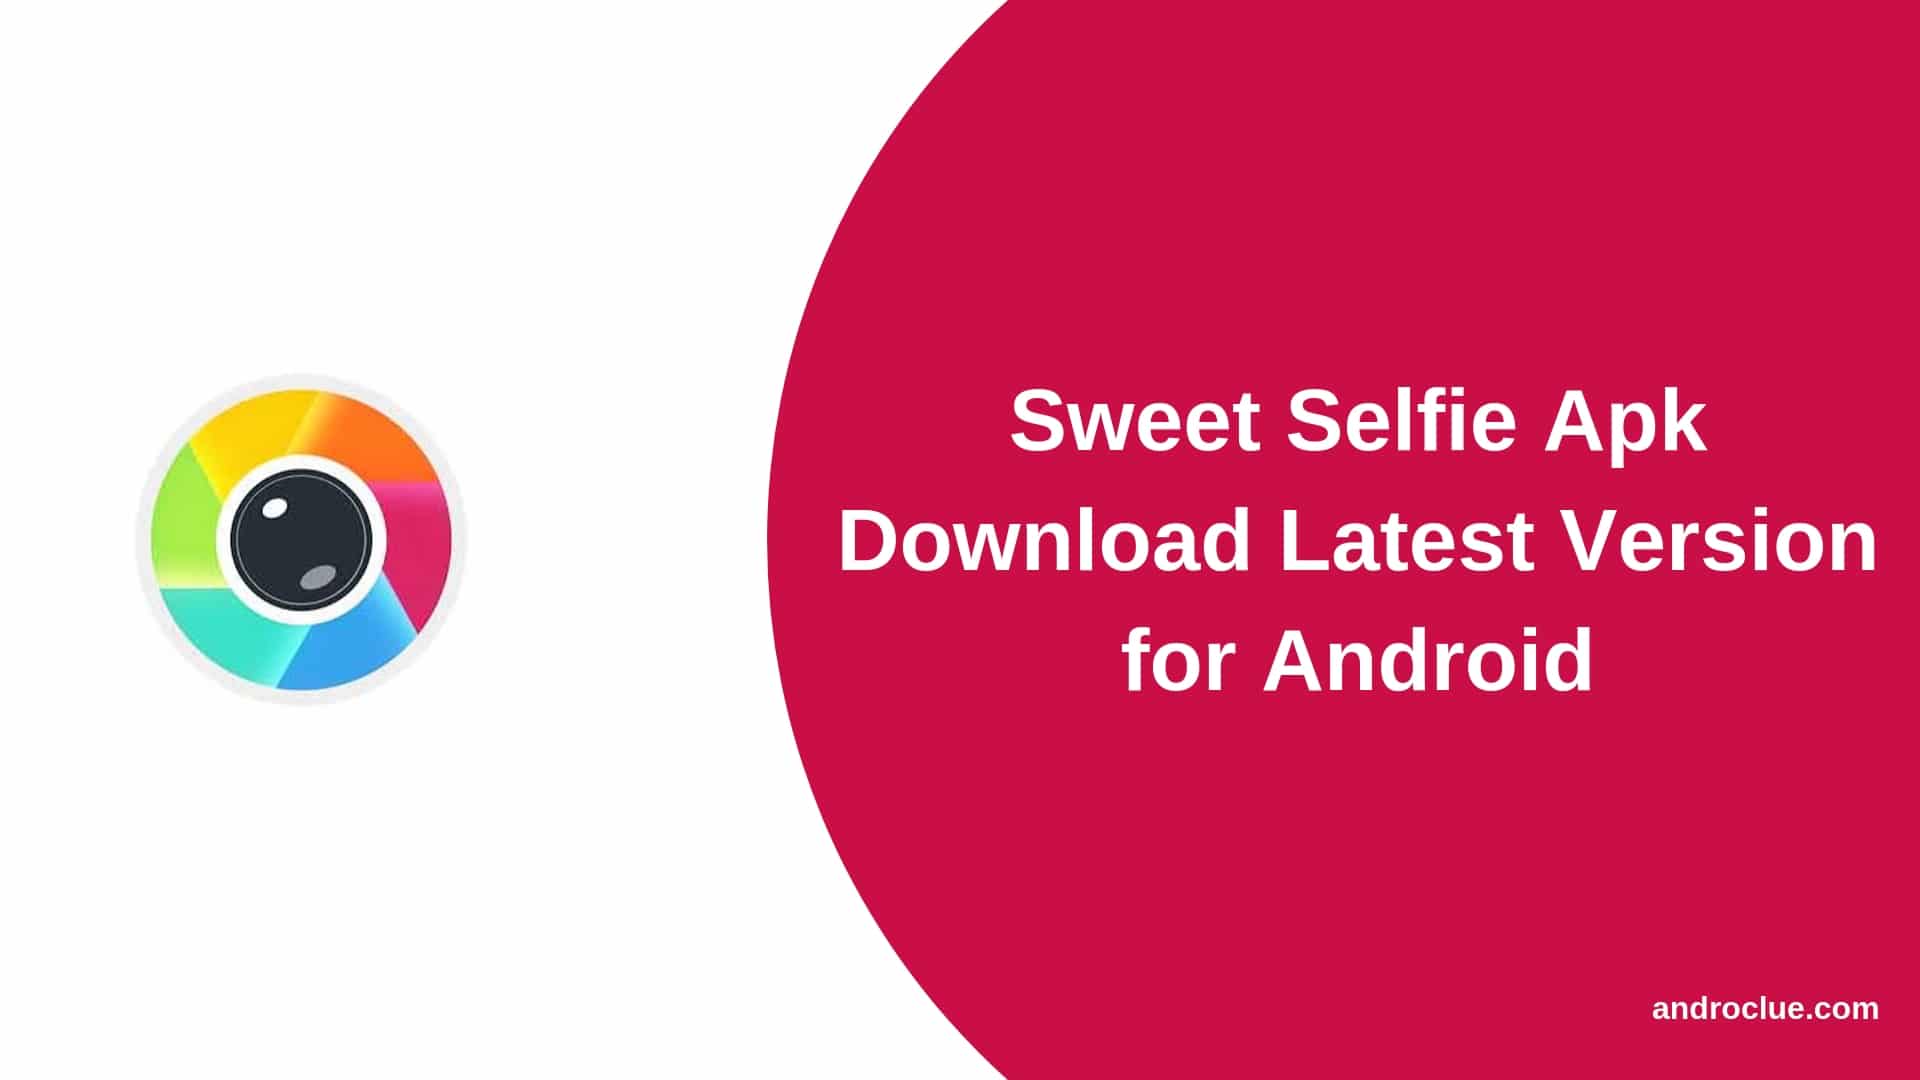 Sweet Selfie Apk Скачать последнюю версию для Android устройств (2019)